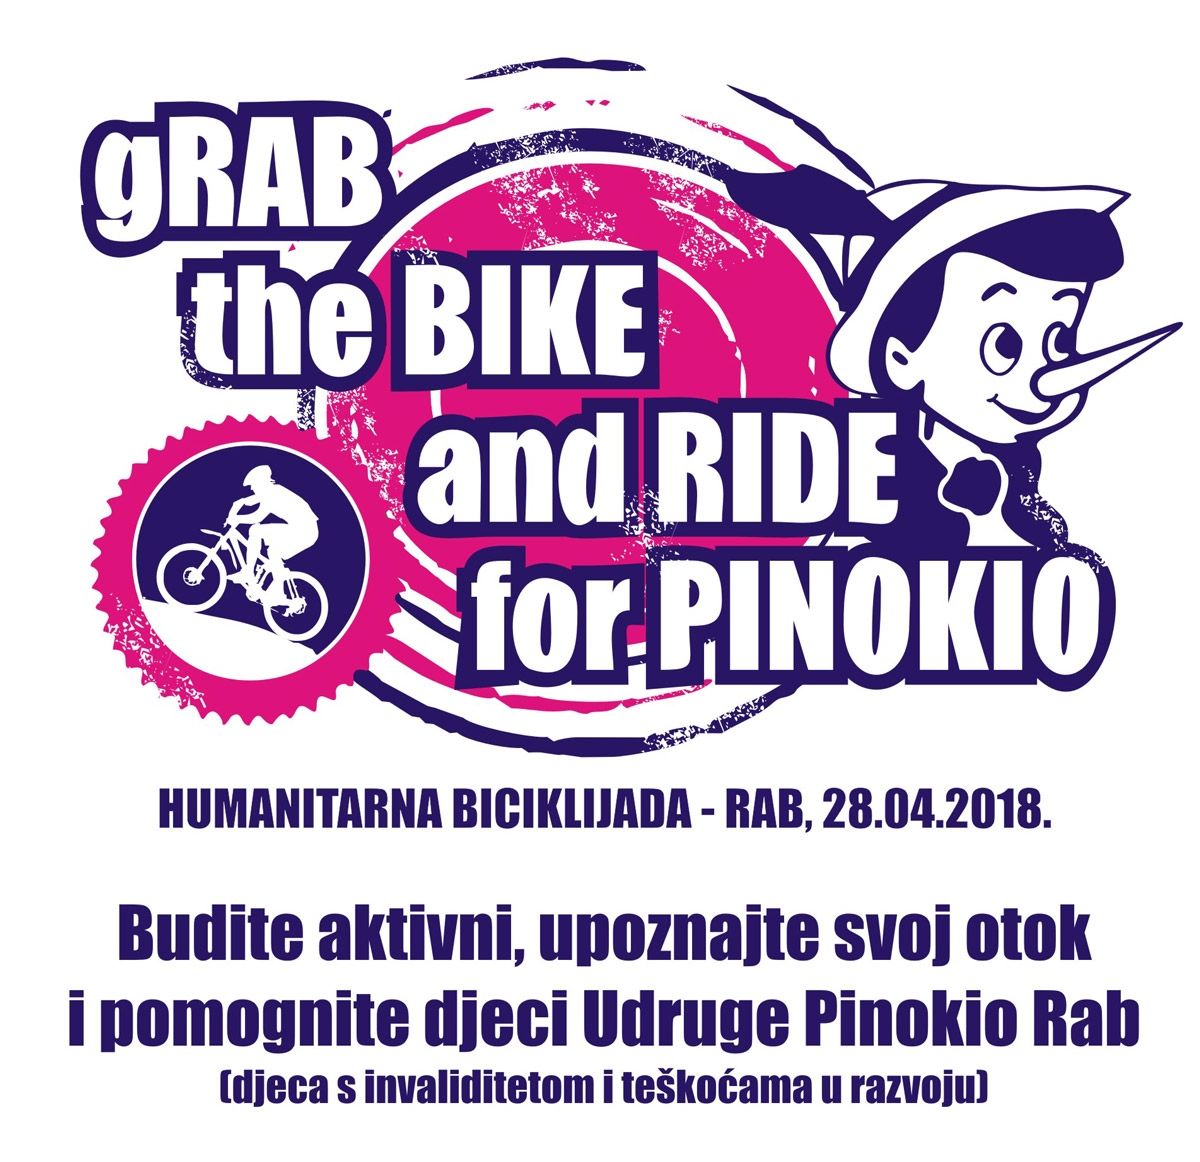 I ove godine pedaliramo za Pinokio! – “gRab the Bike and Ride for Pinokio” / (sub.) 28.4.2018.